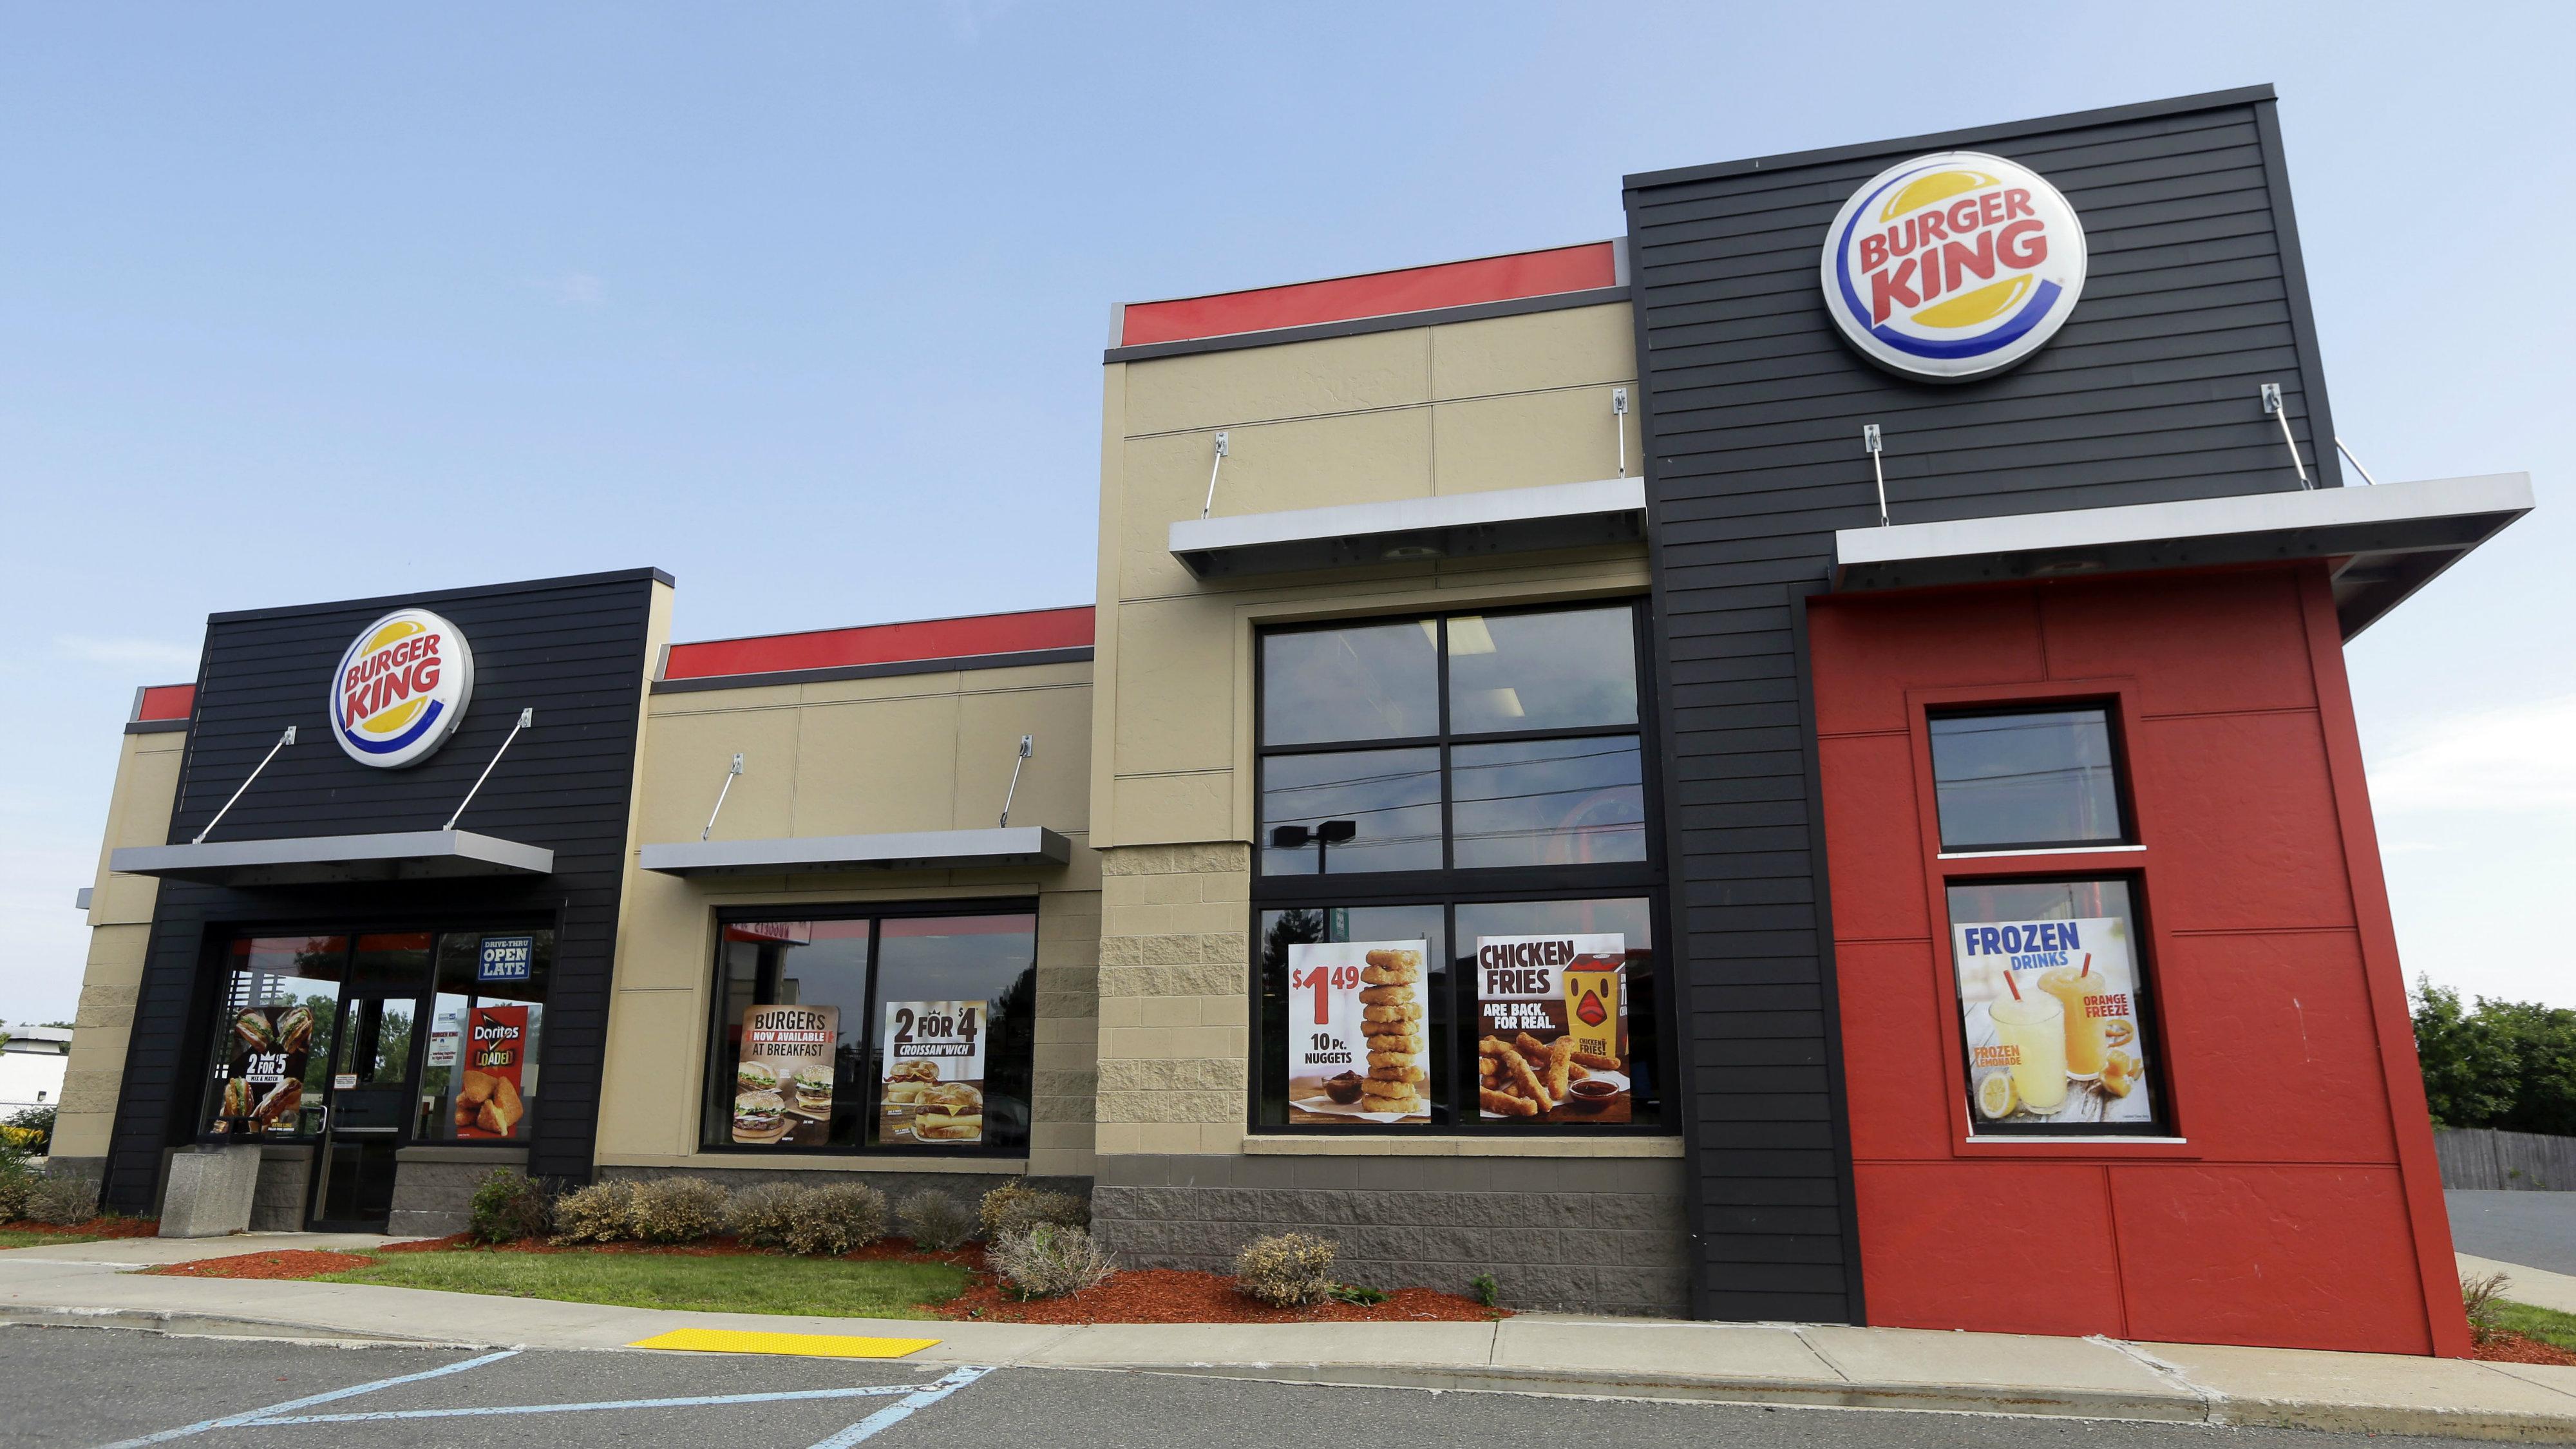 Burger King Restaurant , HD Wallpaper & Backgrounds